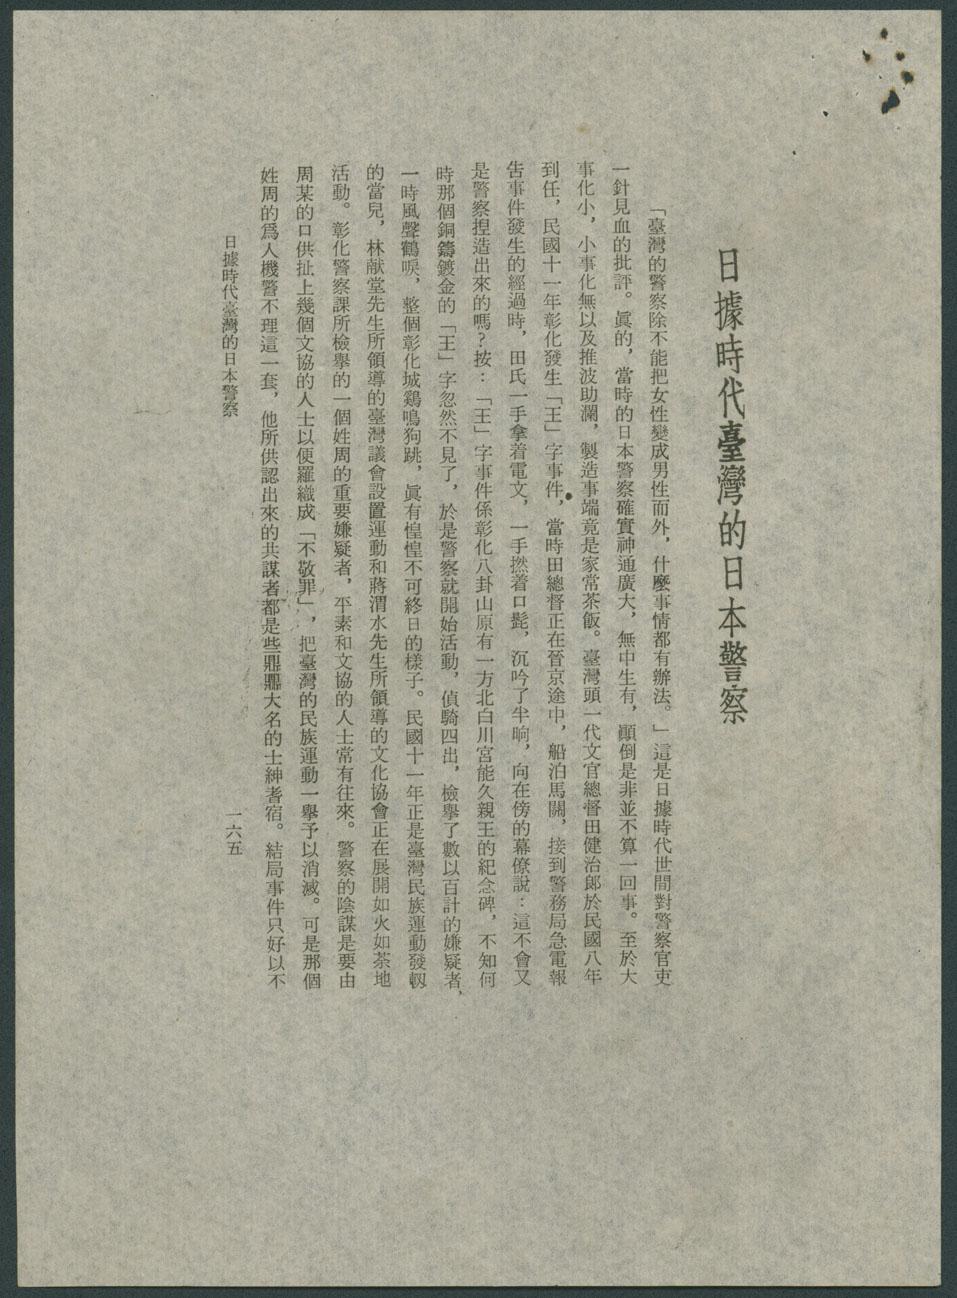 副系列名：半壁書齋隨筆案卷名：小屋大車集件名：日據時代臺灣的日本警察